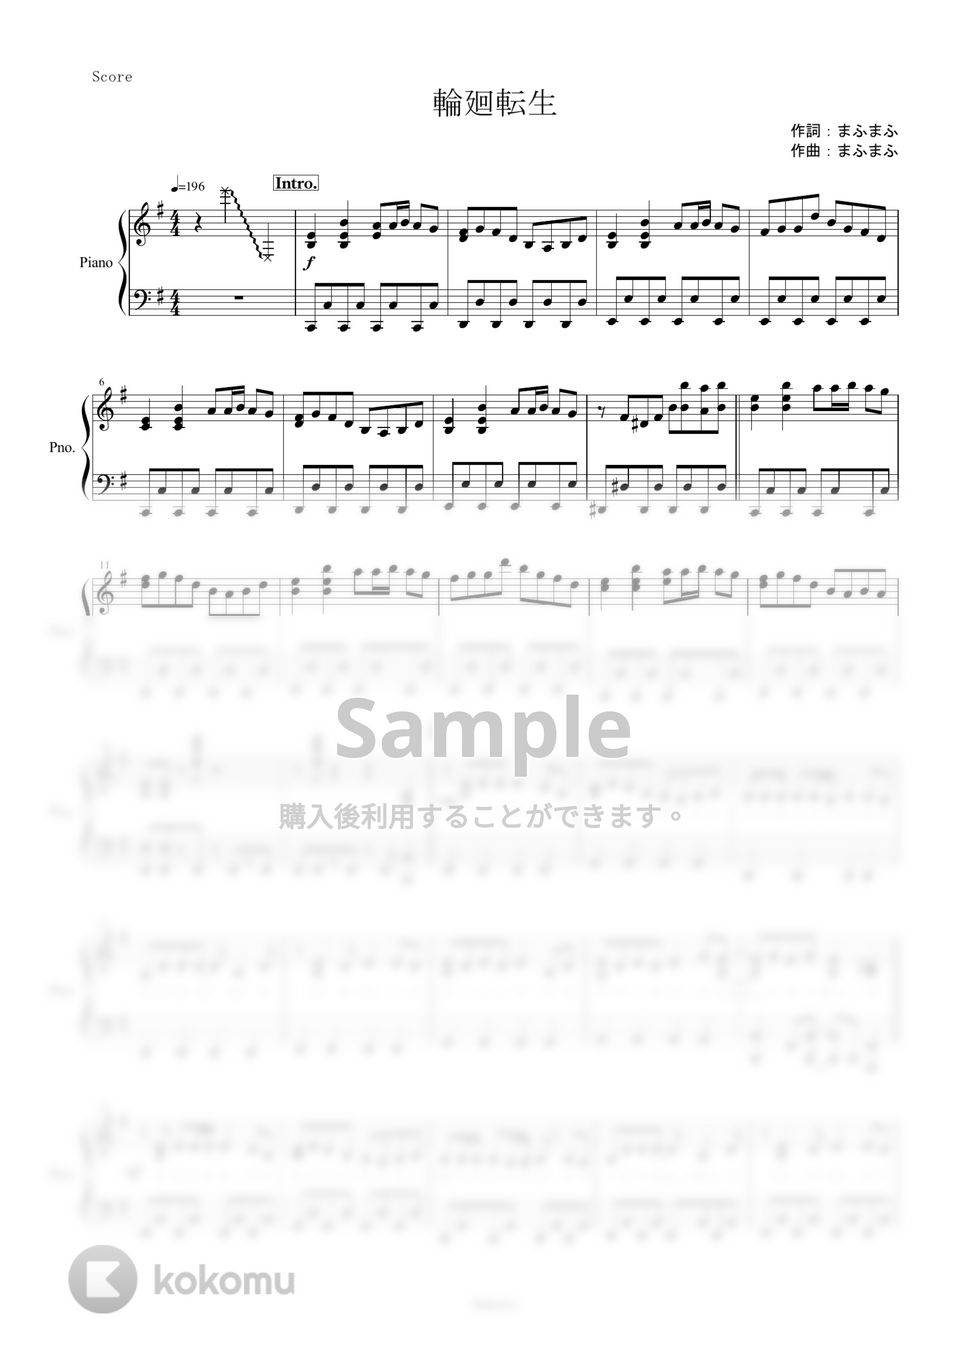 まふまふ - 輪廻転生 (ピアノ楽譜/全６ページ) by yoshi